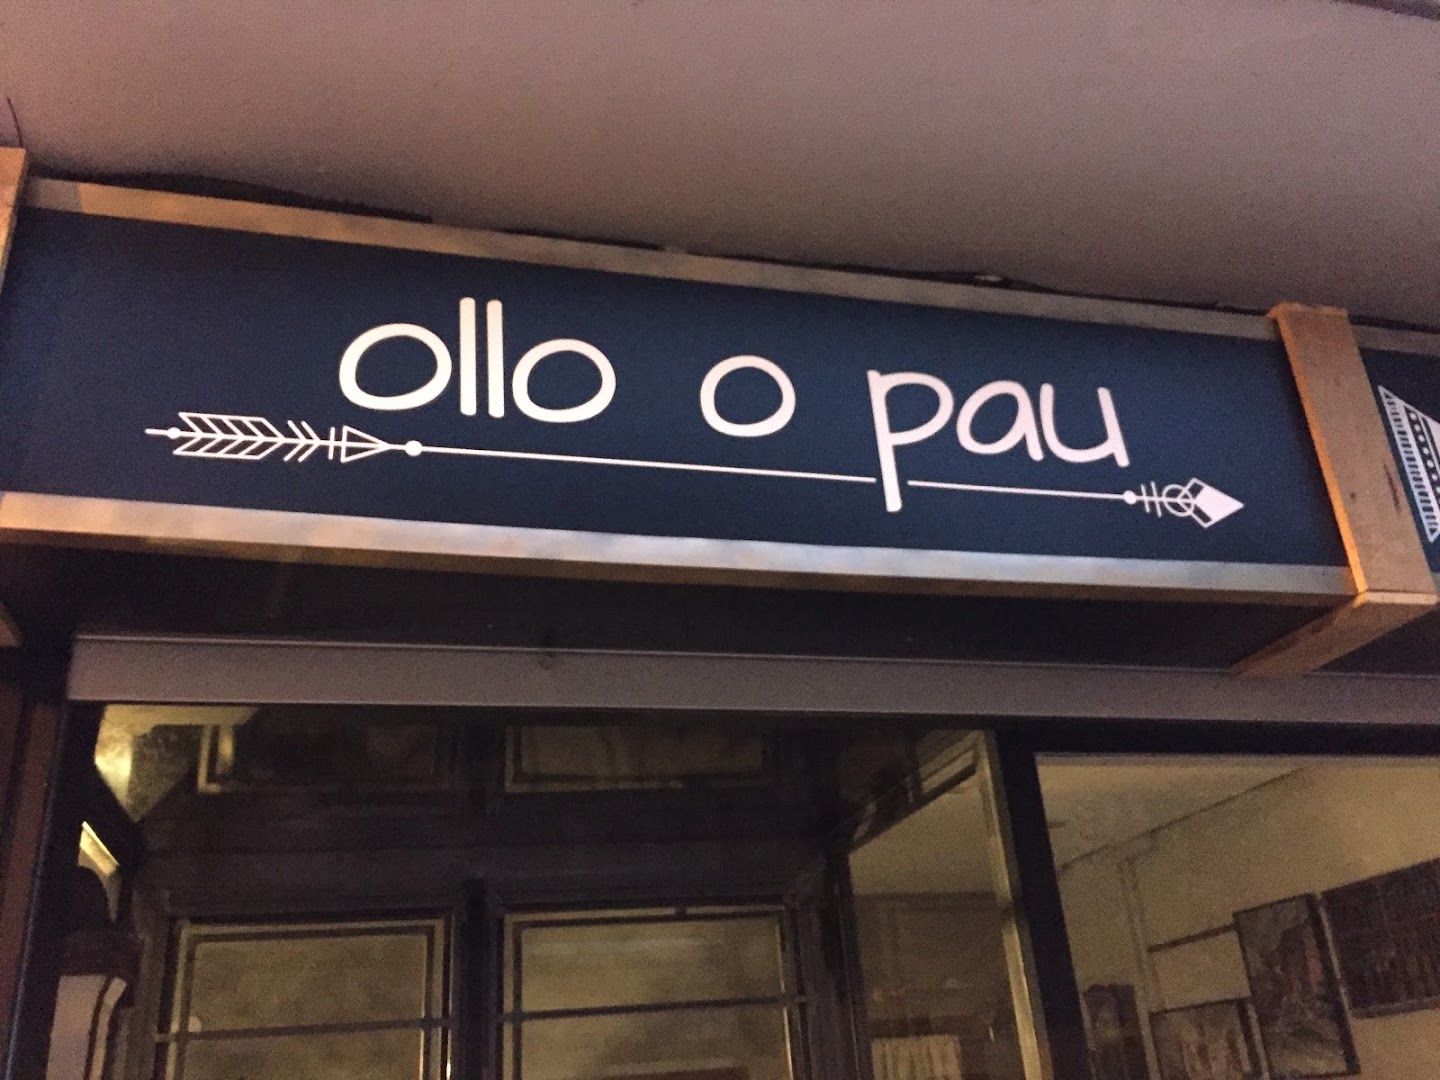 OLLO O PAU